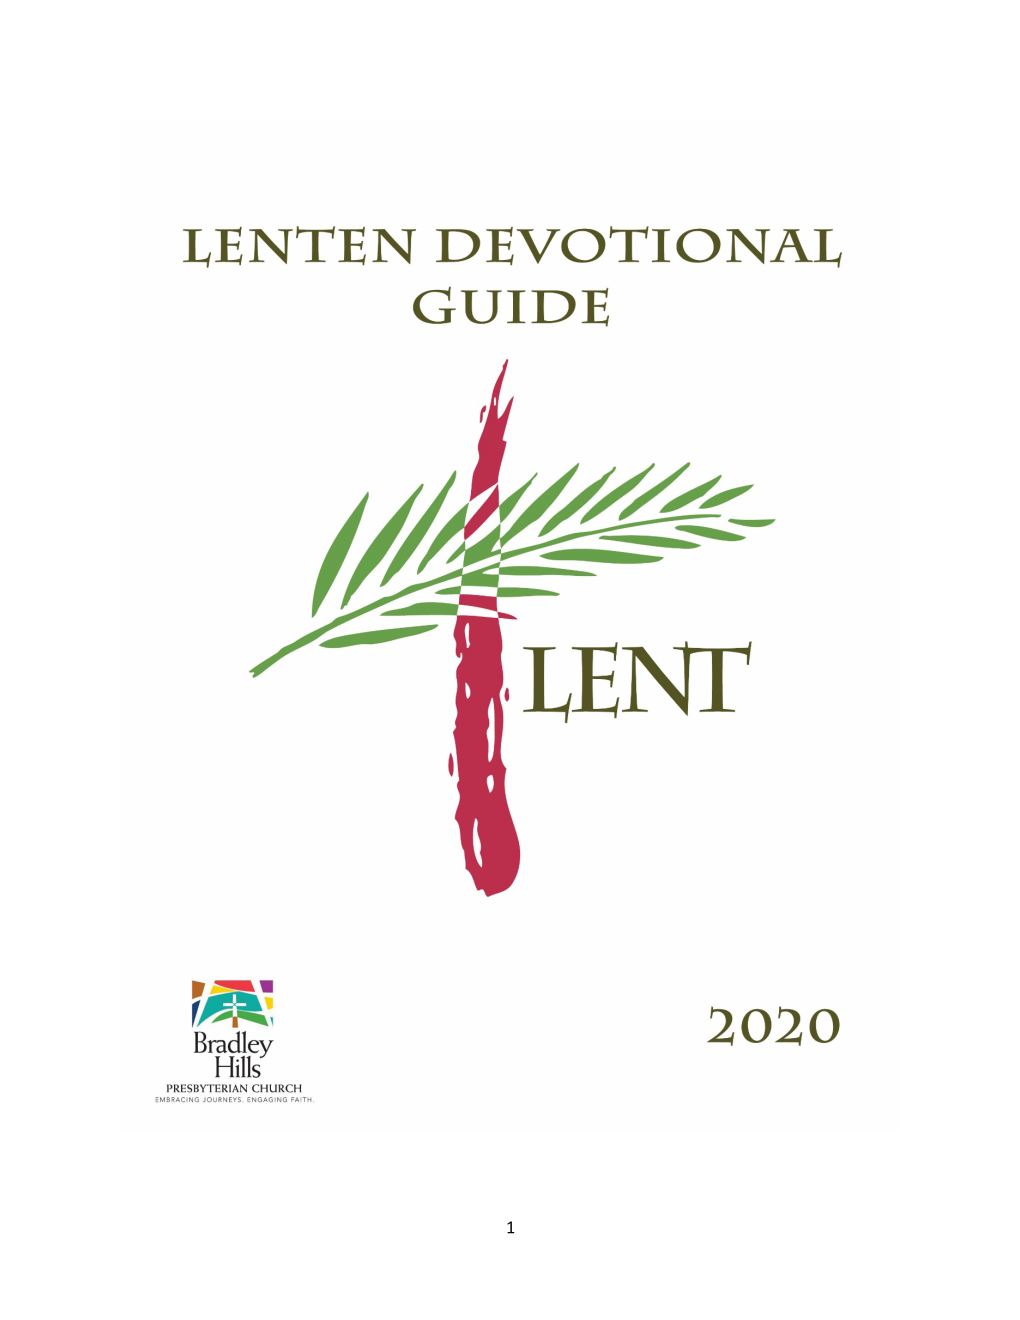 Lenten Devotional 2020